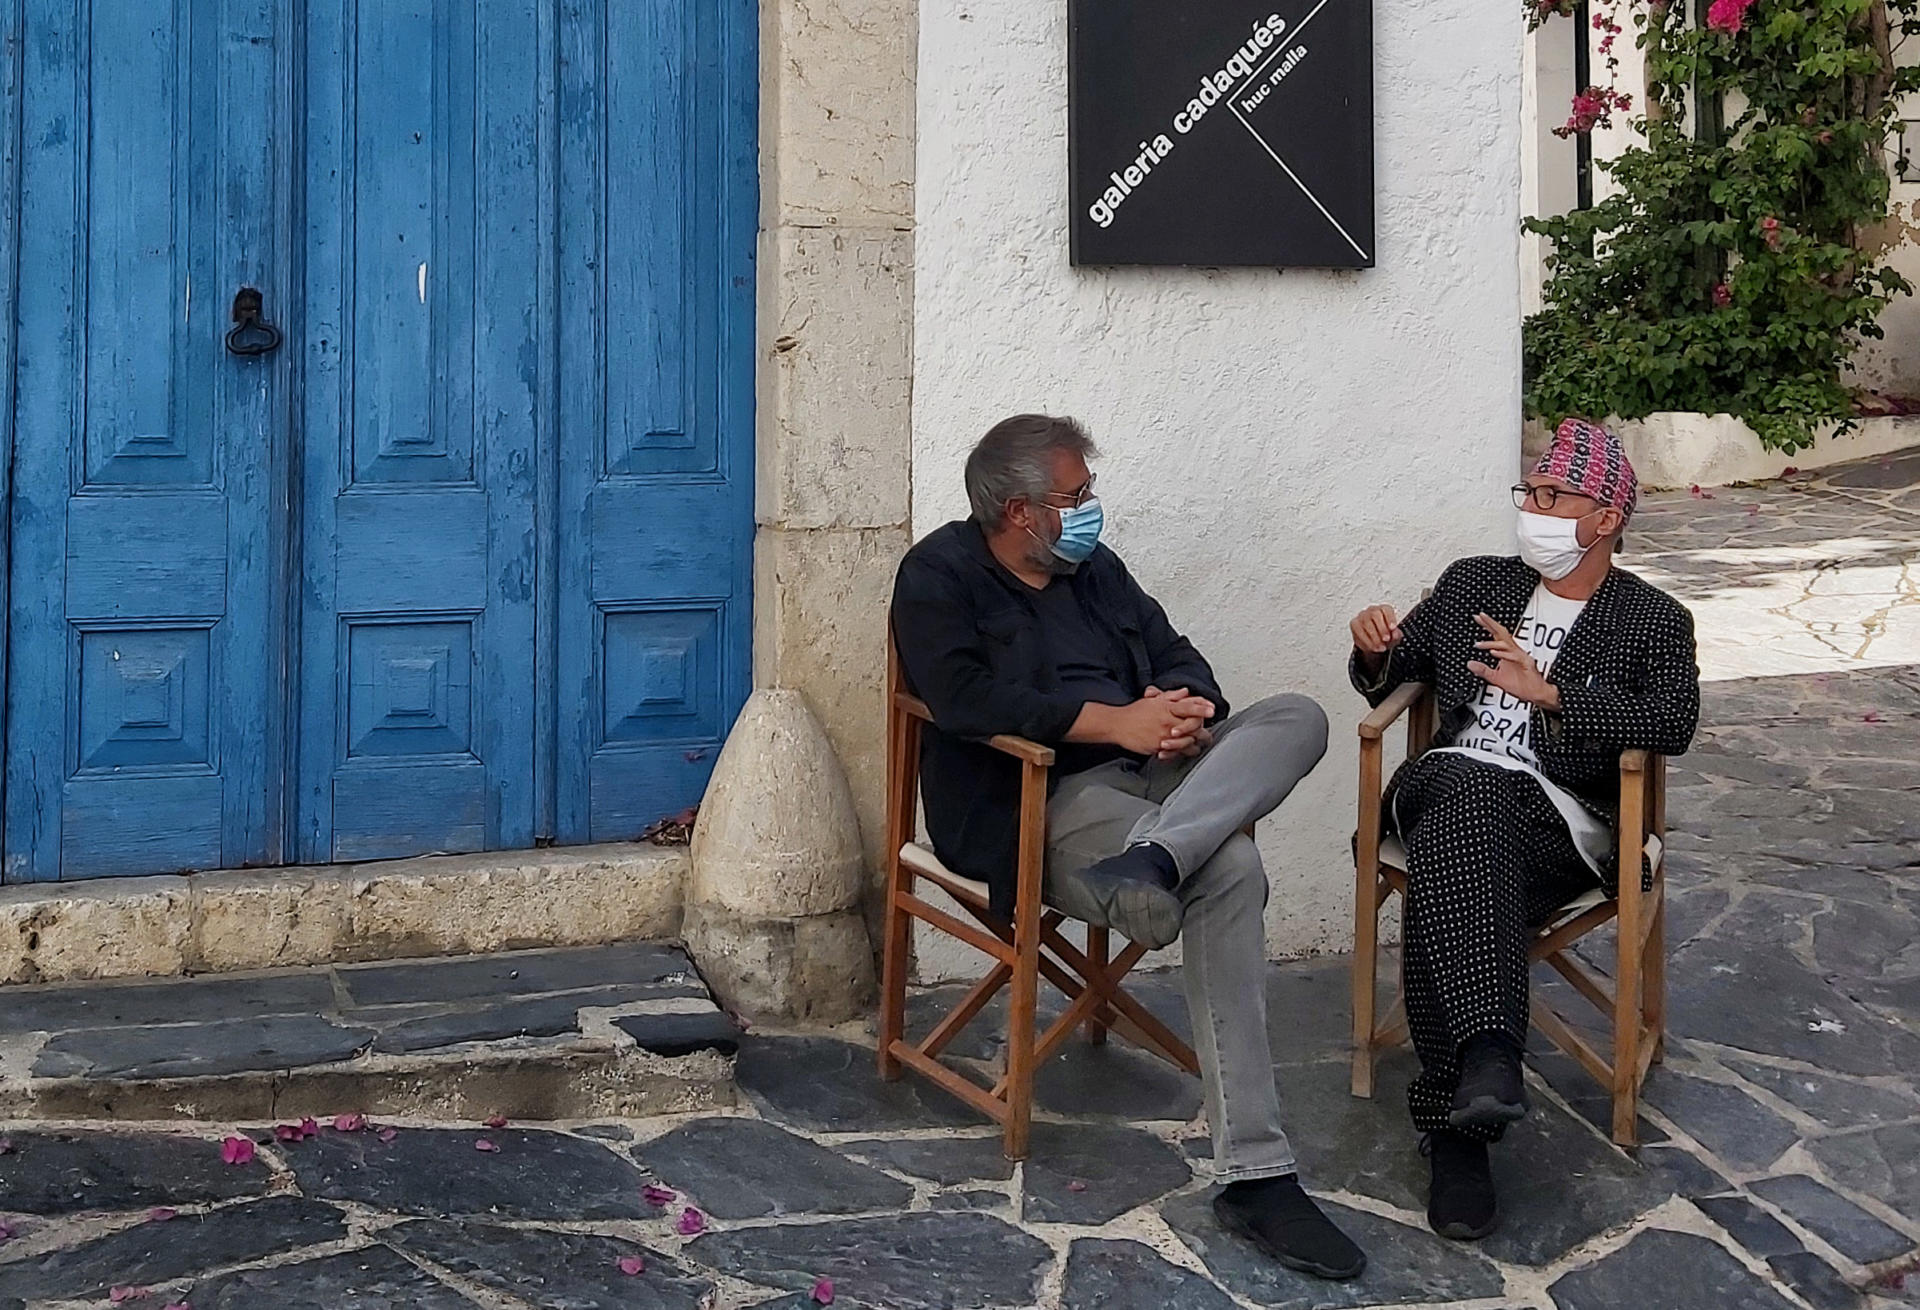 Huc Malla i Vicenç Altaió conversant amb màscara, a causa de la pandèmia, davant de la mítica galeria Cadaqués